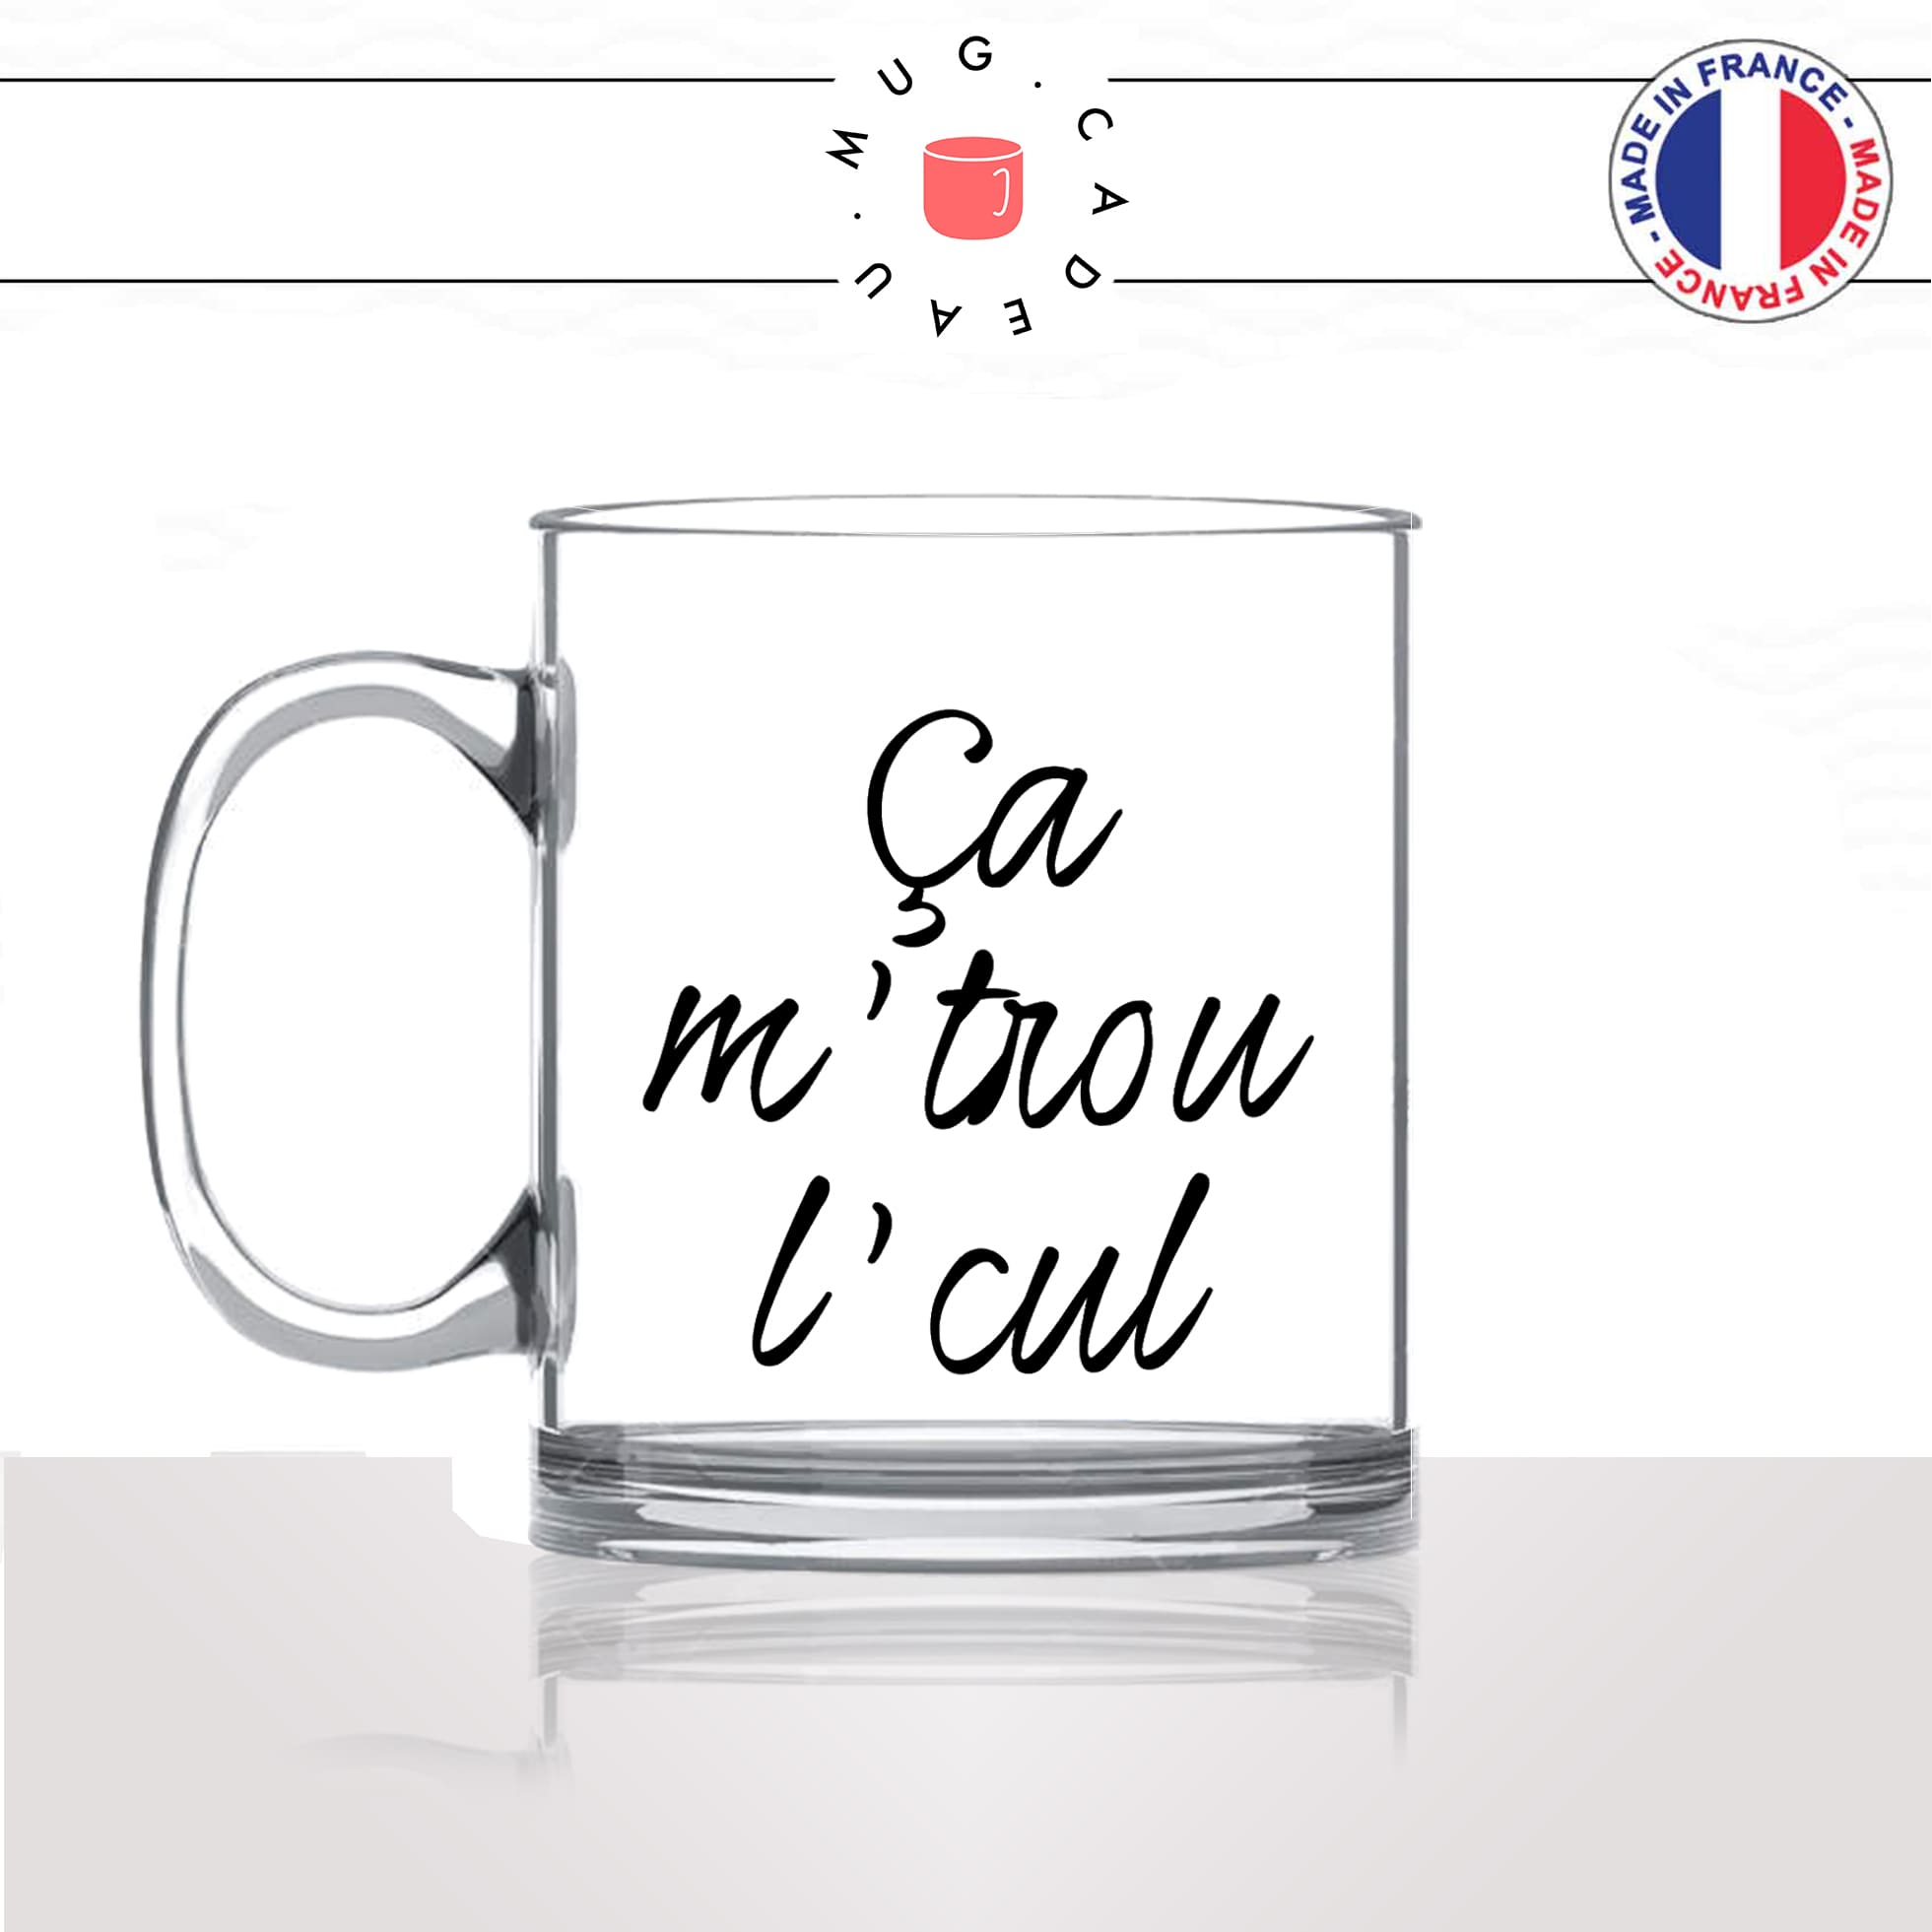 mug-tasse-en-verre-transparent-glass-ca-me-trou-le-cul-expression-francaise-homme-femme-humour-fun-cool-idée-cadeau-original-personnalisé